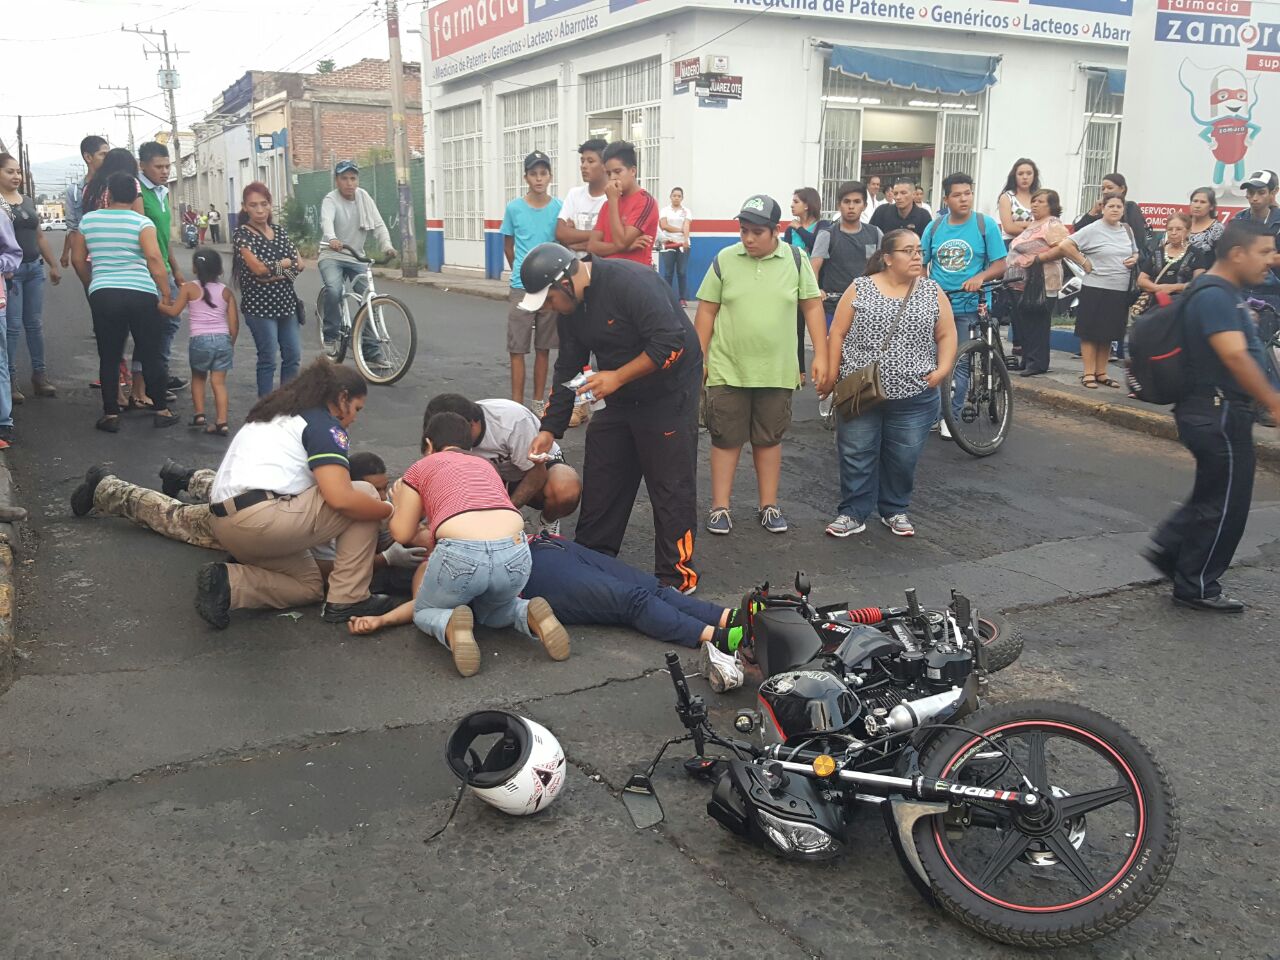 Camión urbano atropella a pareja; la mujer resulta lesionada en Zamora